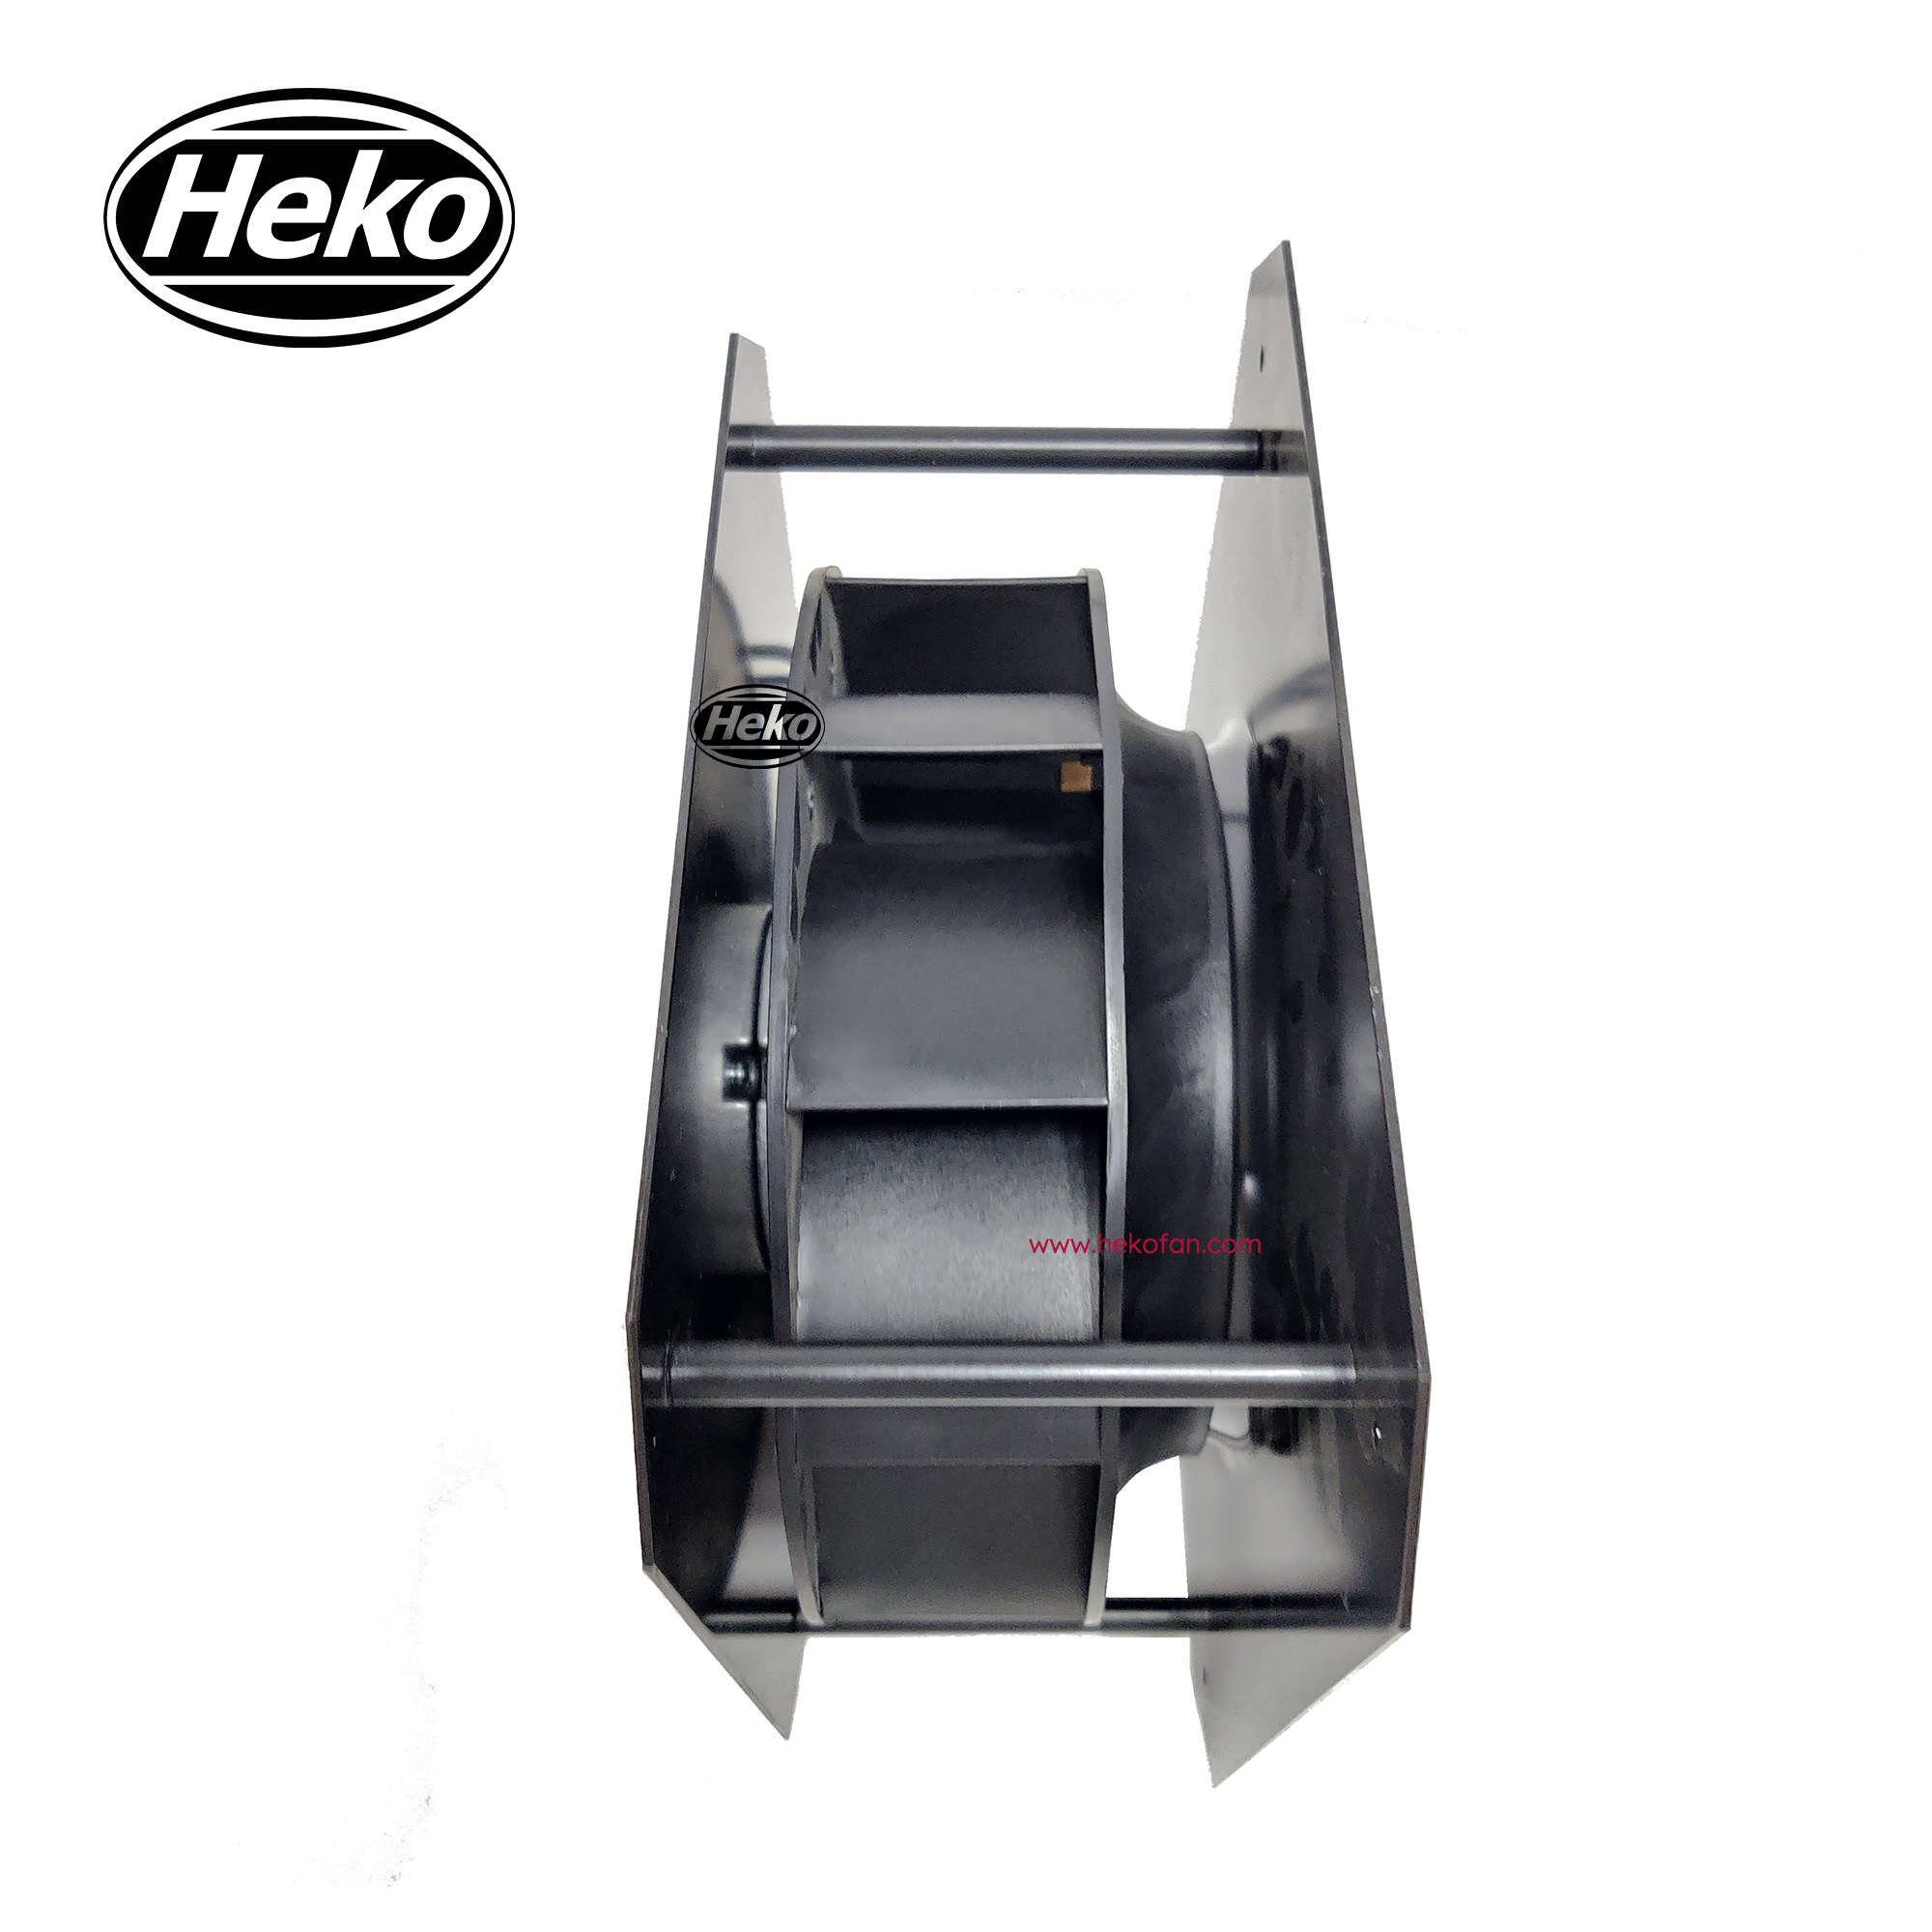 HEKO EC133mm 230VAC الكلمات الخلفية المنحني مروحة الطرد المركزي مع قوس